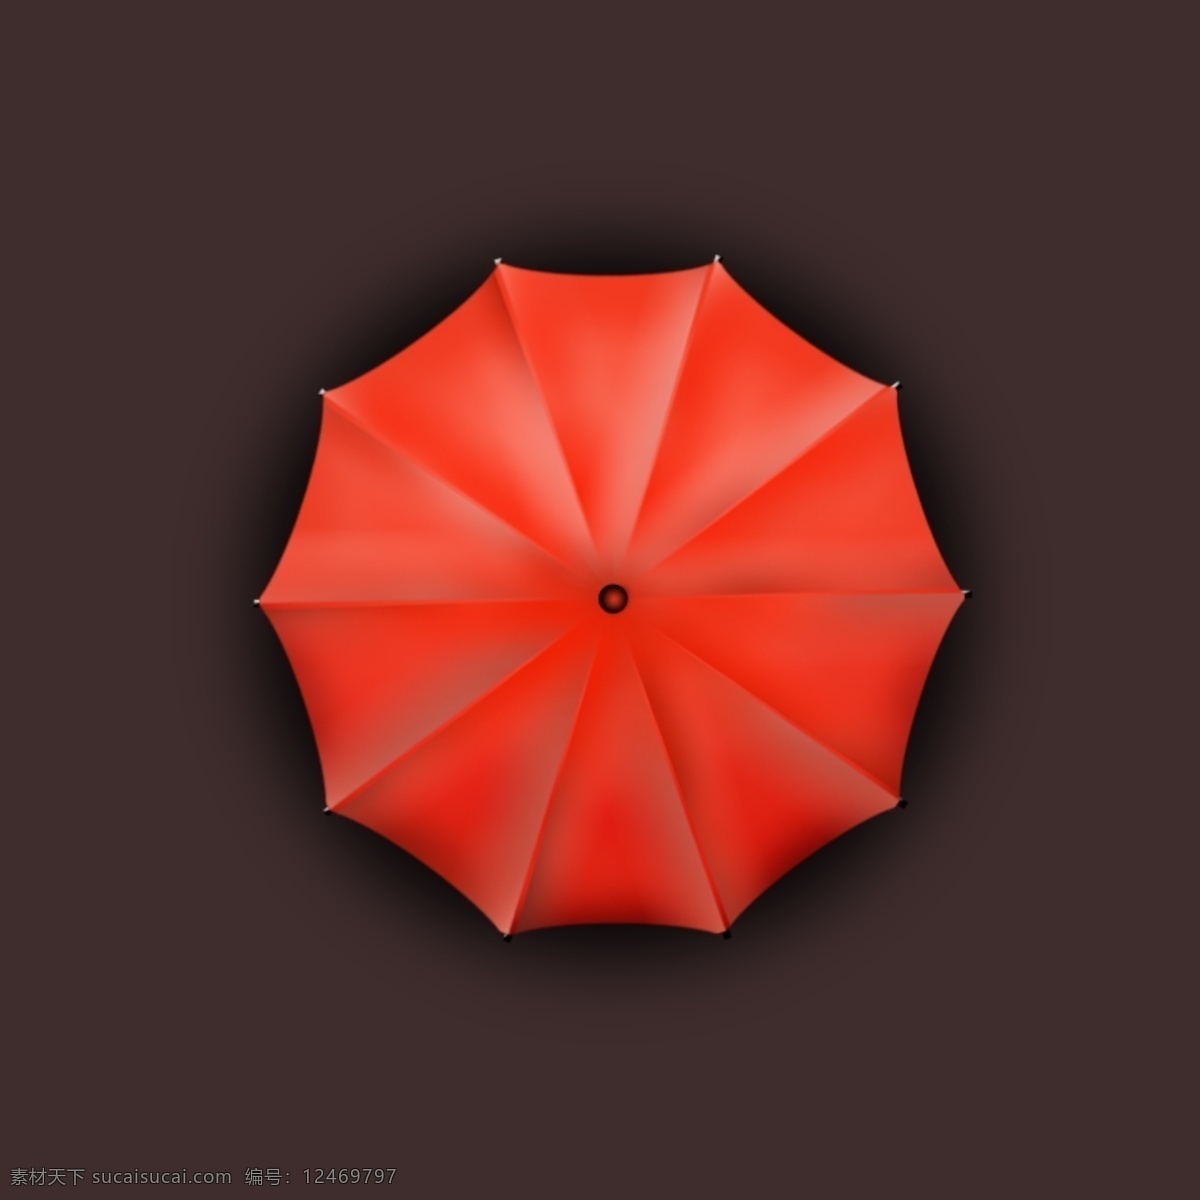 红色 雨伞 矢量图 ui 扁平化设计 红 立体 其他矢量图